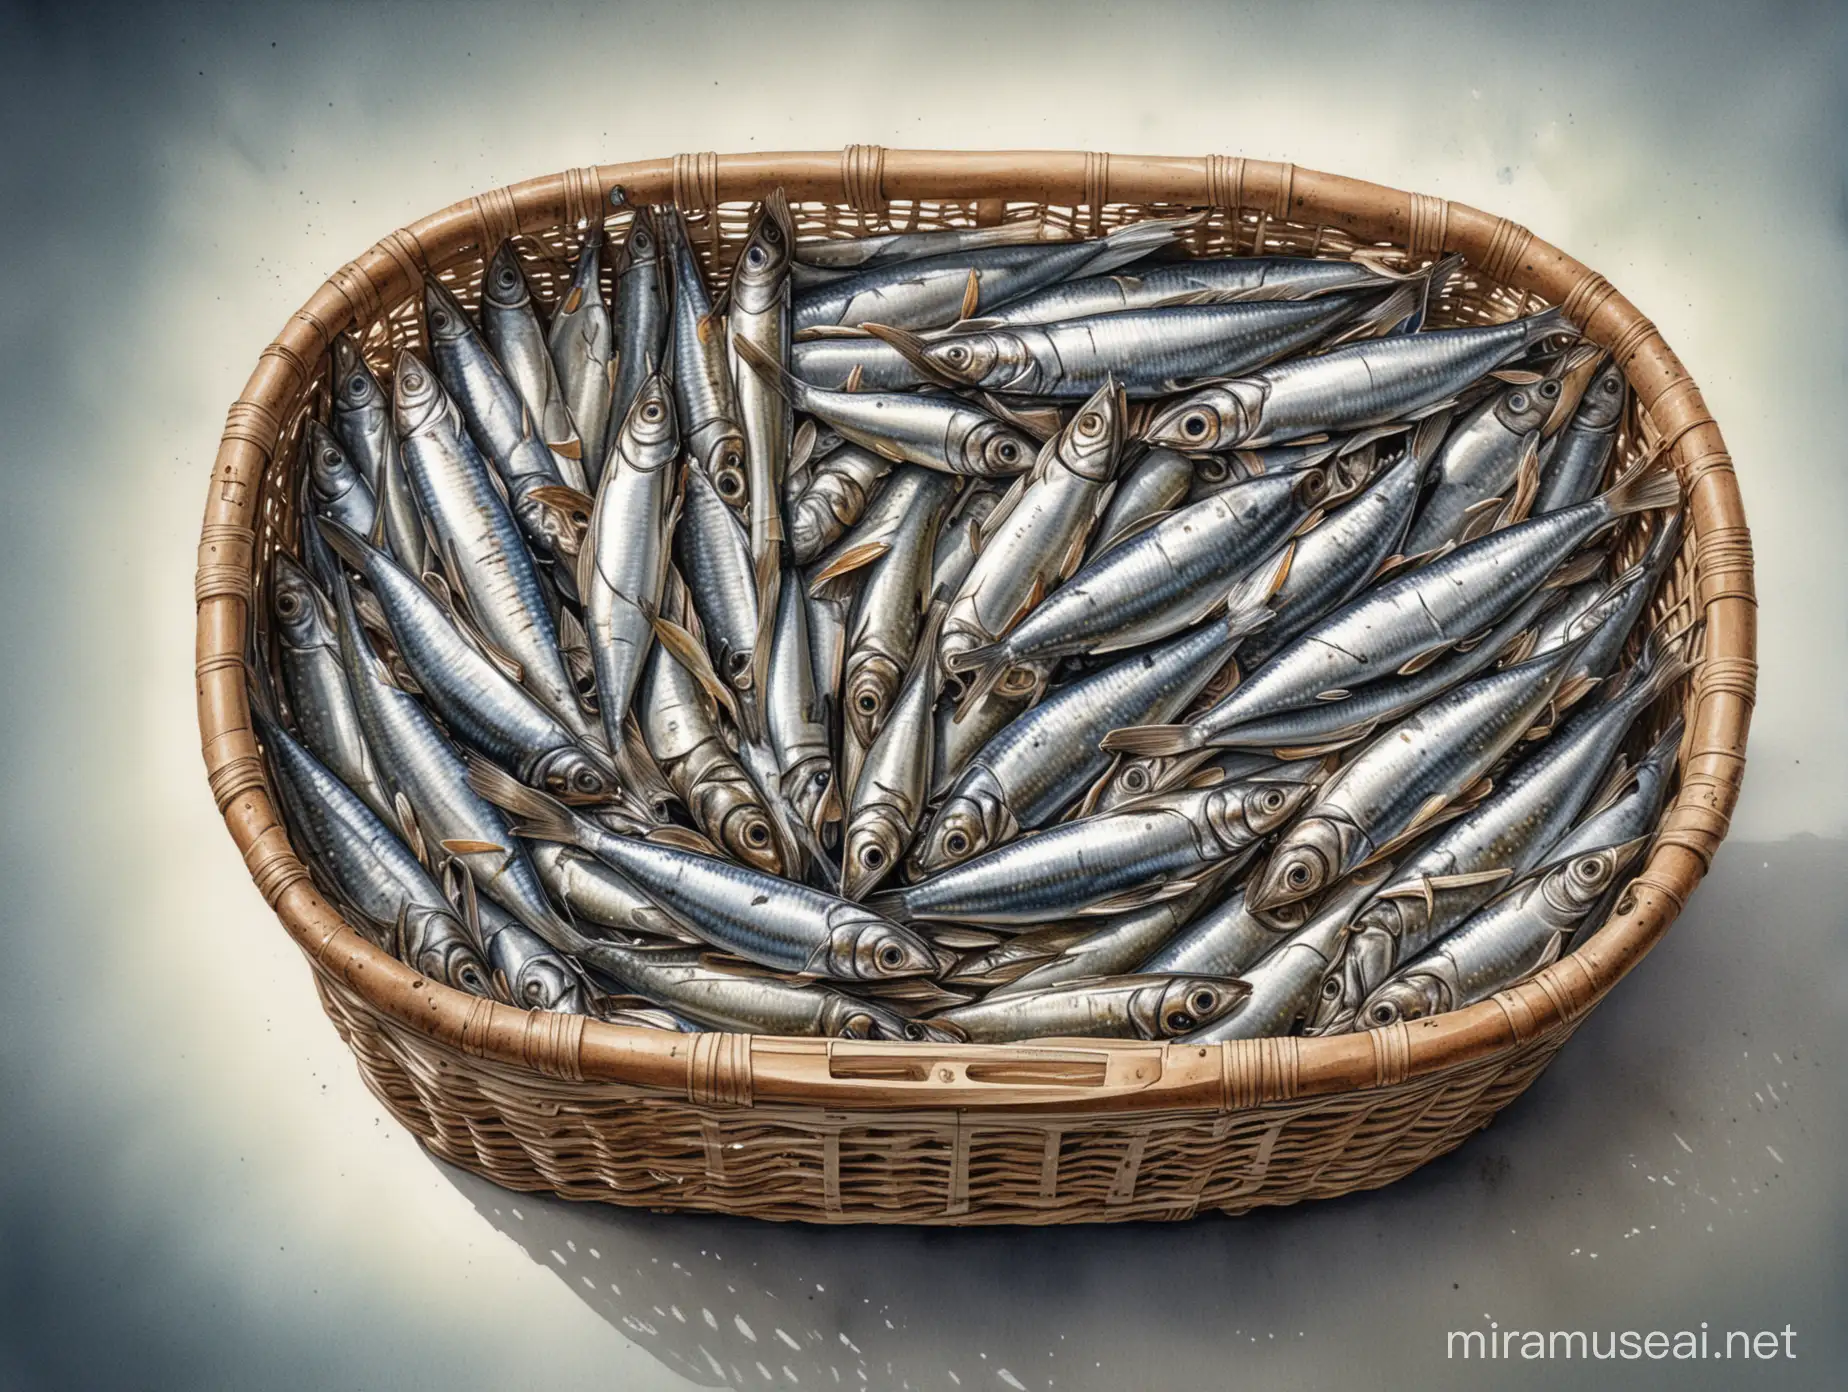 Imagine un dessin technique précis d'un panier remplis de sardines, avec tous les détails anatomiques soigneusement rendus; avec de belles ombres, aquarelle